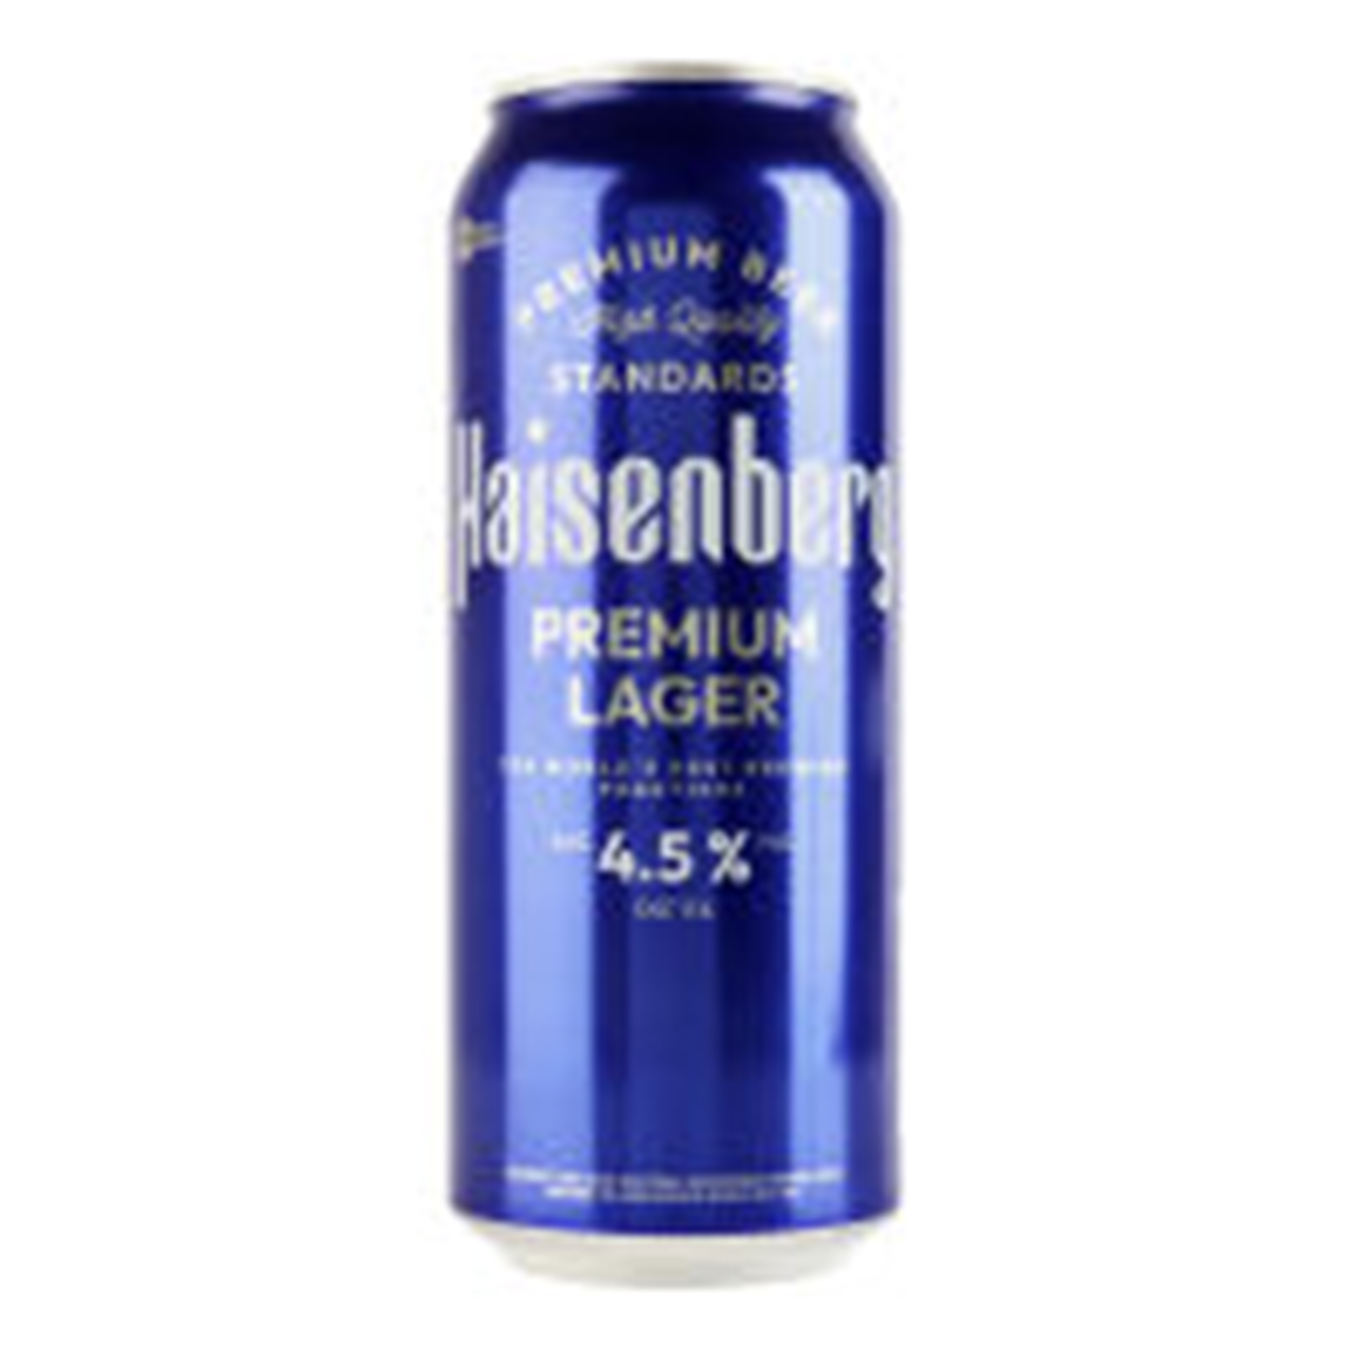 Light beer Heisenberg 4.5% 0.5 l